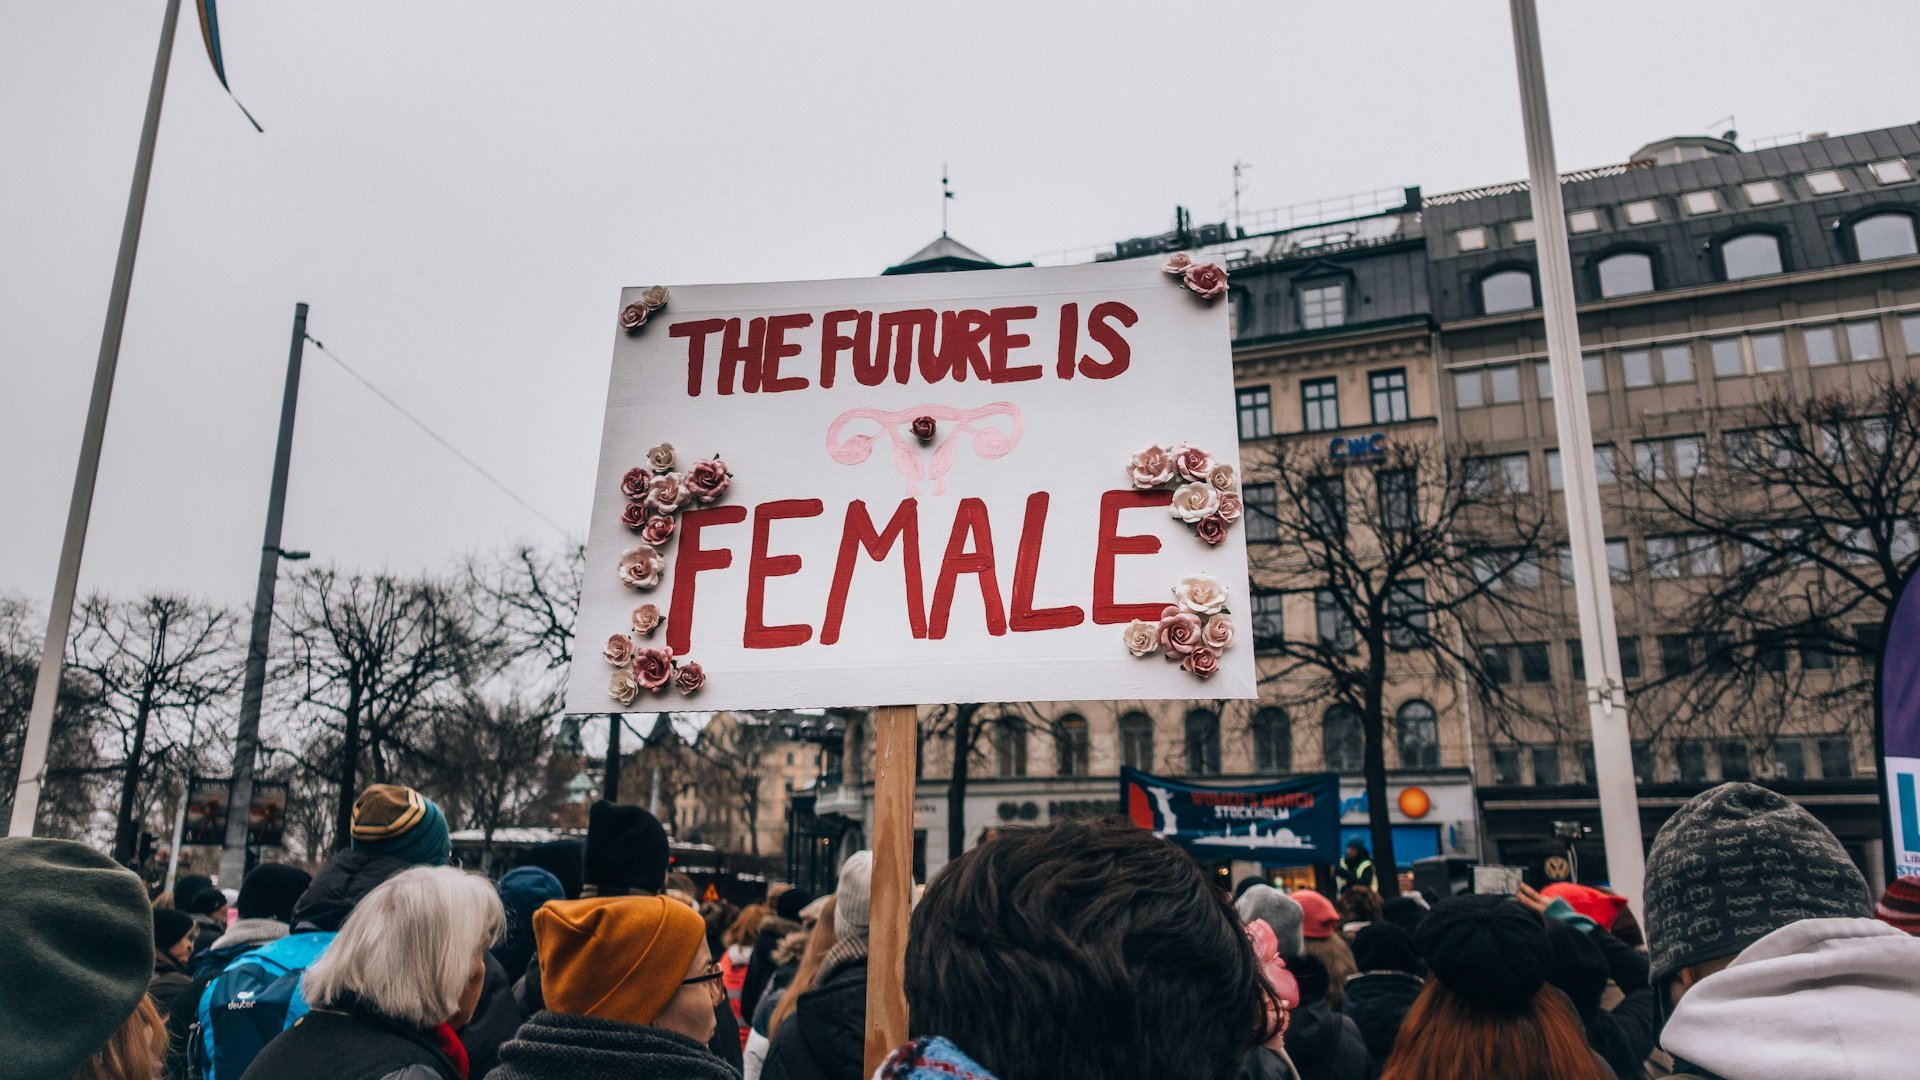 Cartaz escrito 'O futuro é feminino' em inglês, levantada durante um protesto feminista.